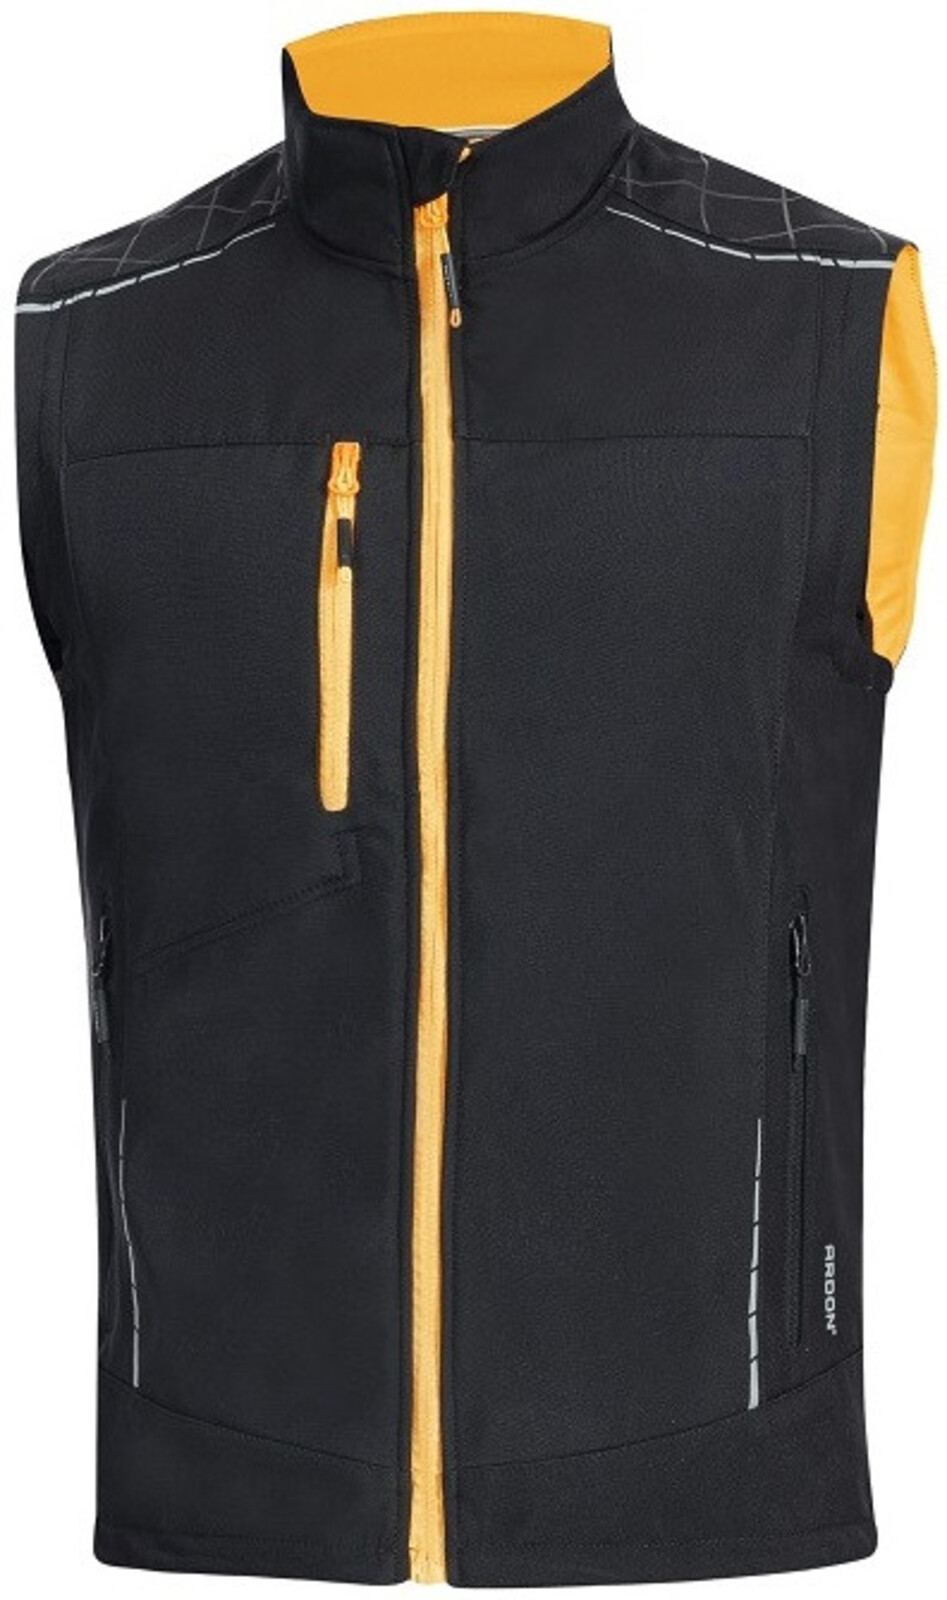 Pánska softshellová vesta Ardon Vision - veľkosť: XL, farba: čierna/oranžová